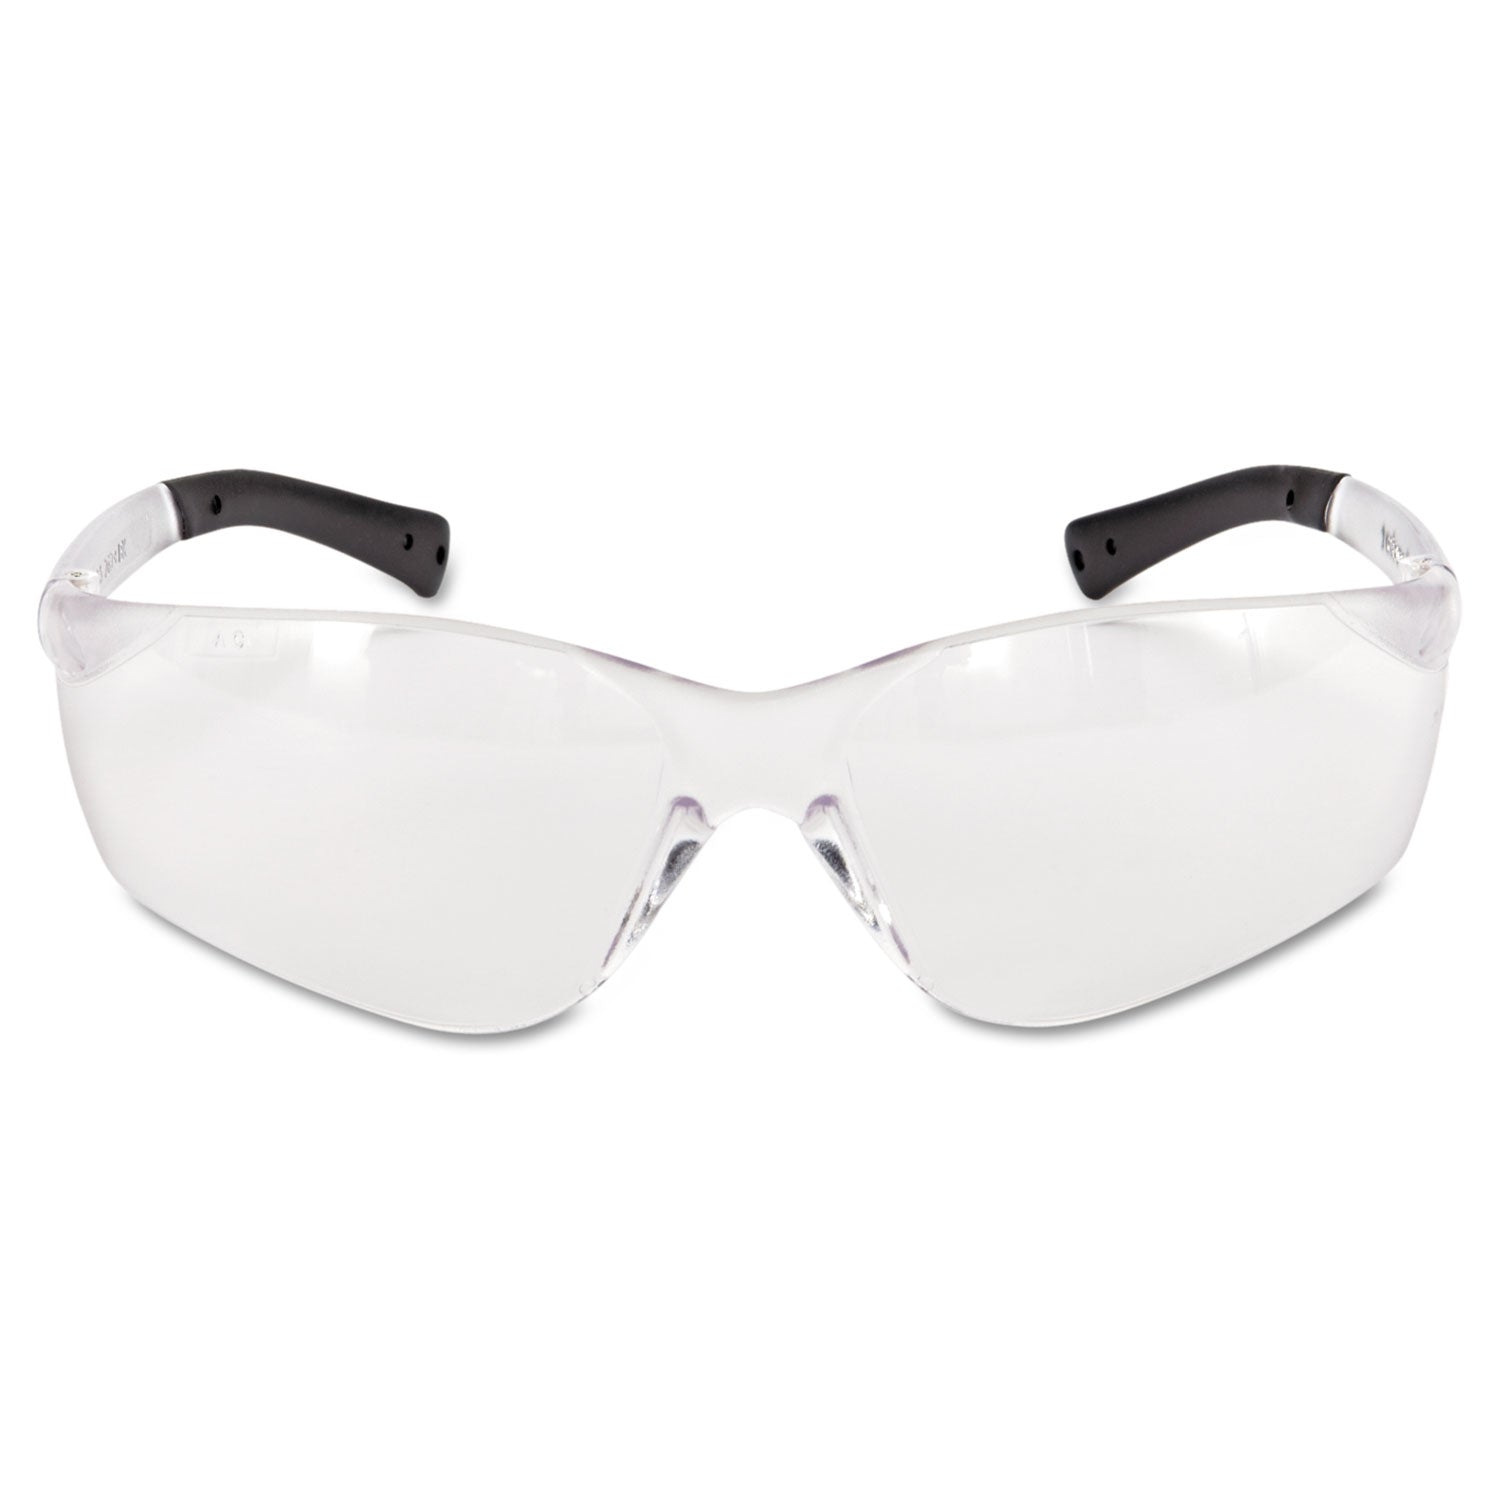 BearKat Safety Glasses, Frost Frame, Clear Lens - 